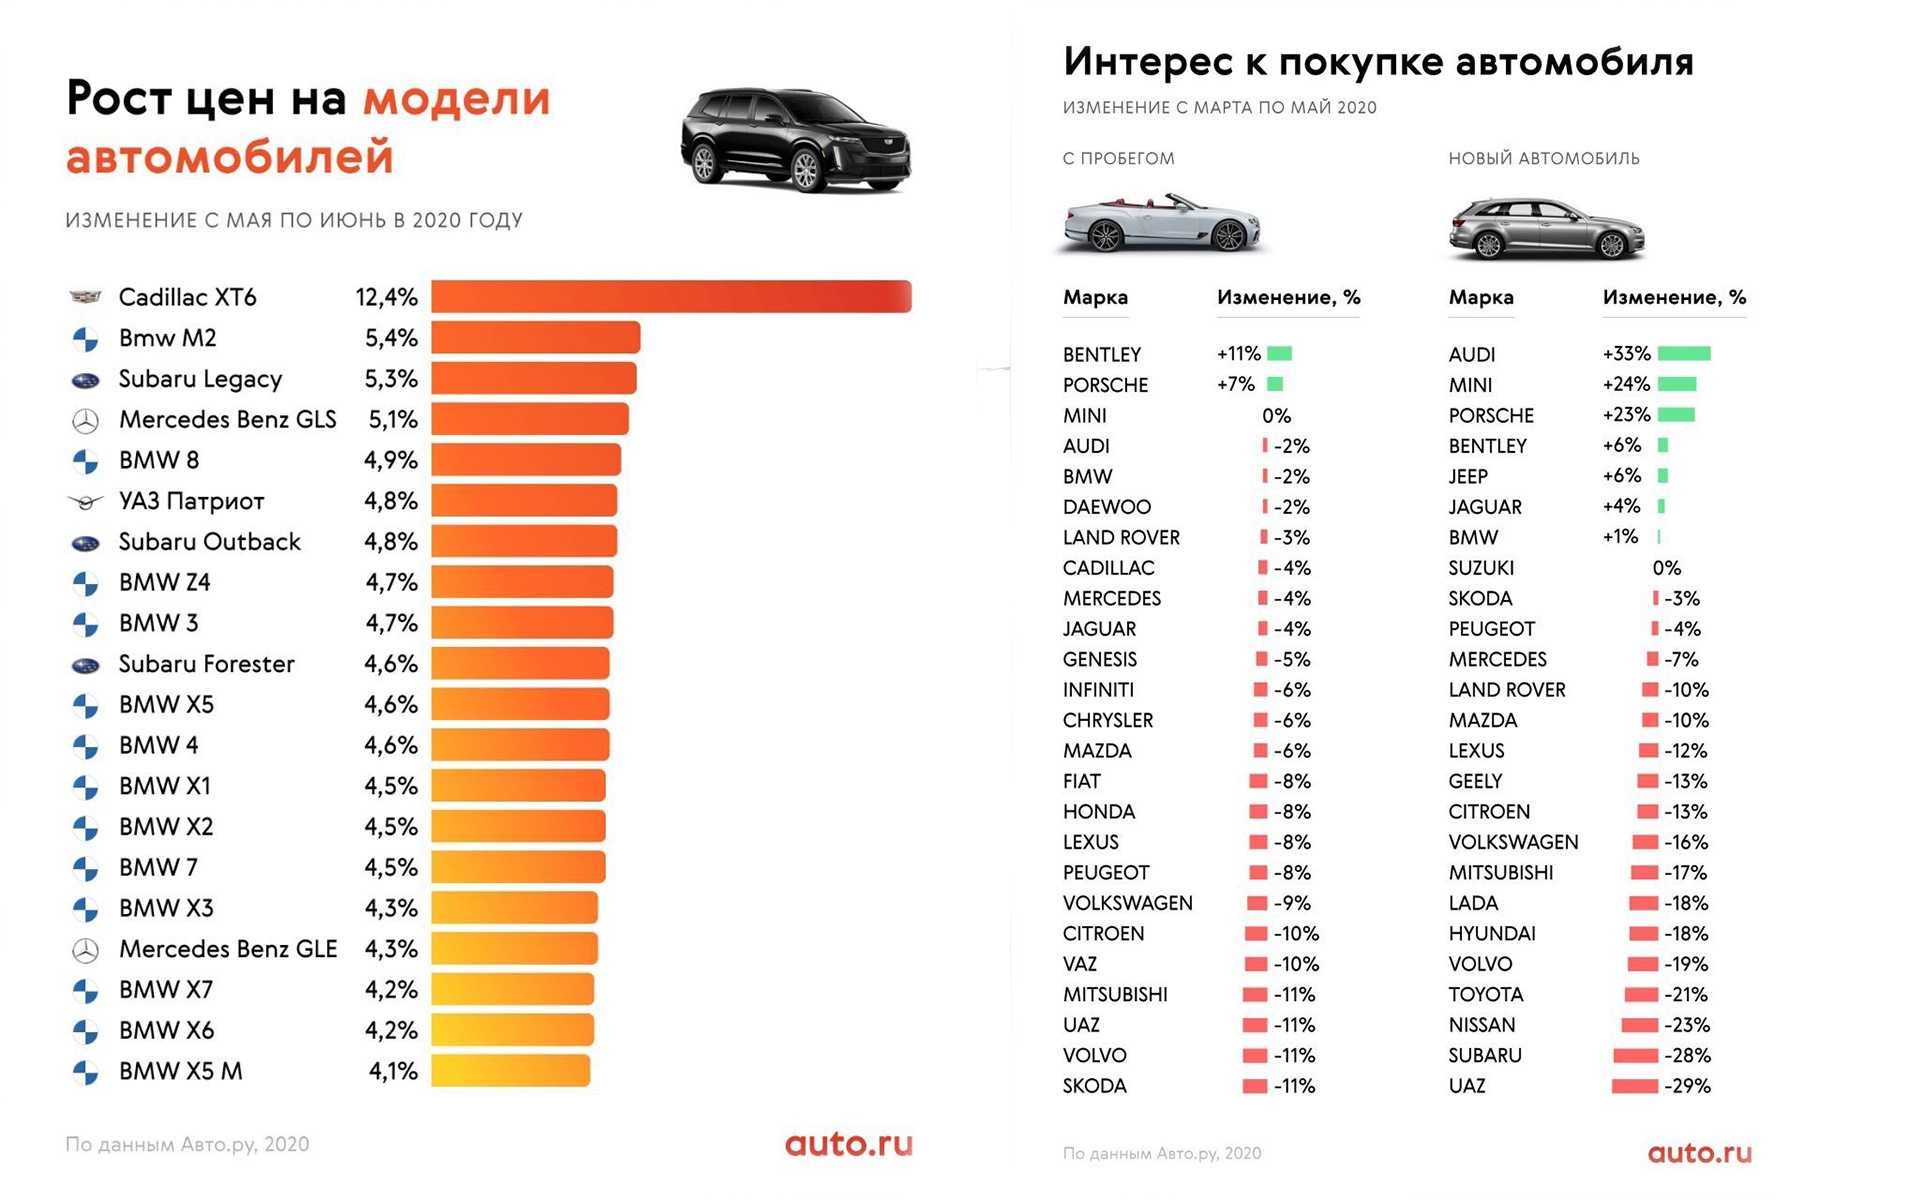 Самые надежные и актуальные модели: топ машин до 200000 рублей